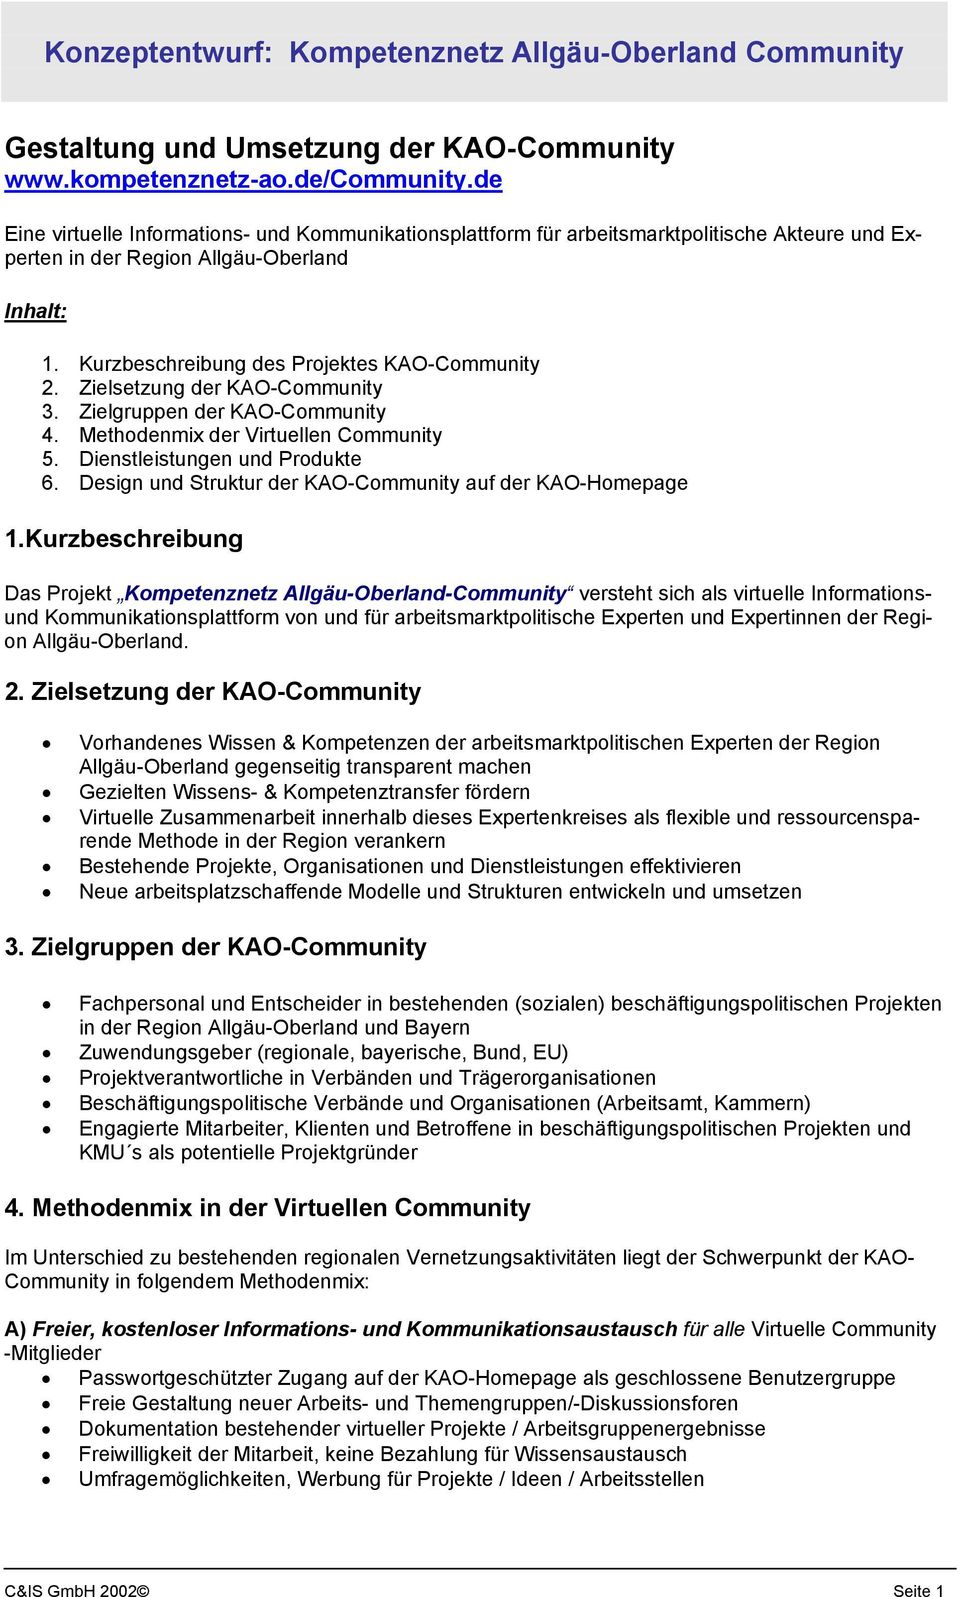 Zielsetzung der KAO-Community 3. Zielgruppen der KAO-Community 4. Methodenmix der Virtuellen Community 5. Dienstleistungen und Produkte 6. Design und Struktur der KAO-Community auf der KAO-Homepage 1.